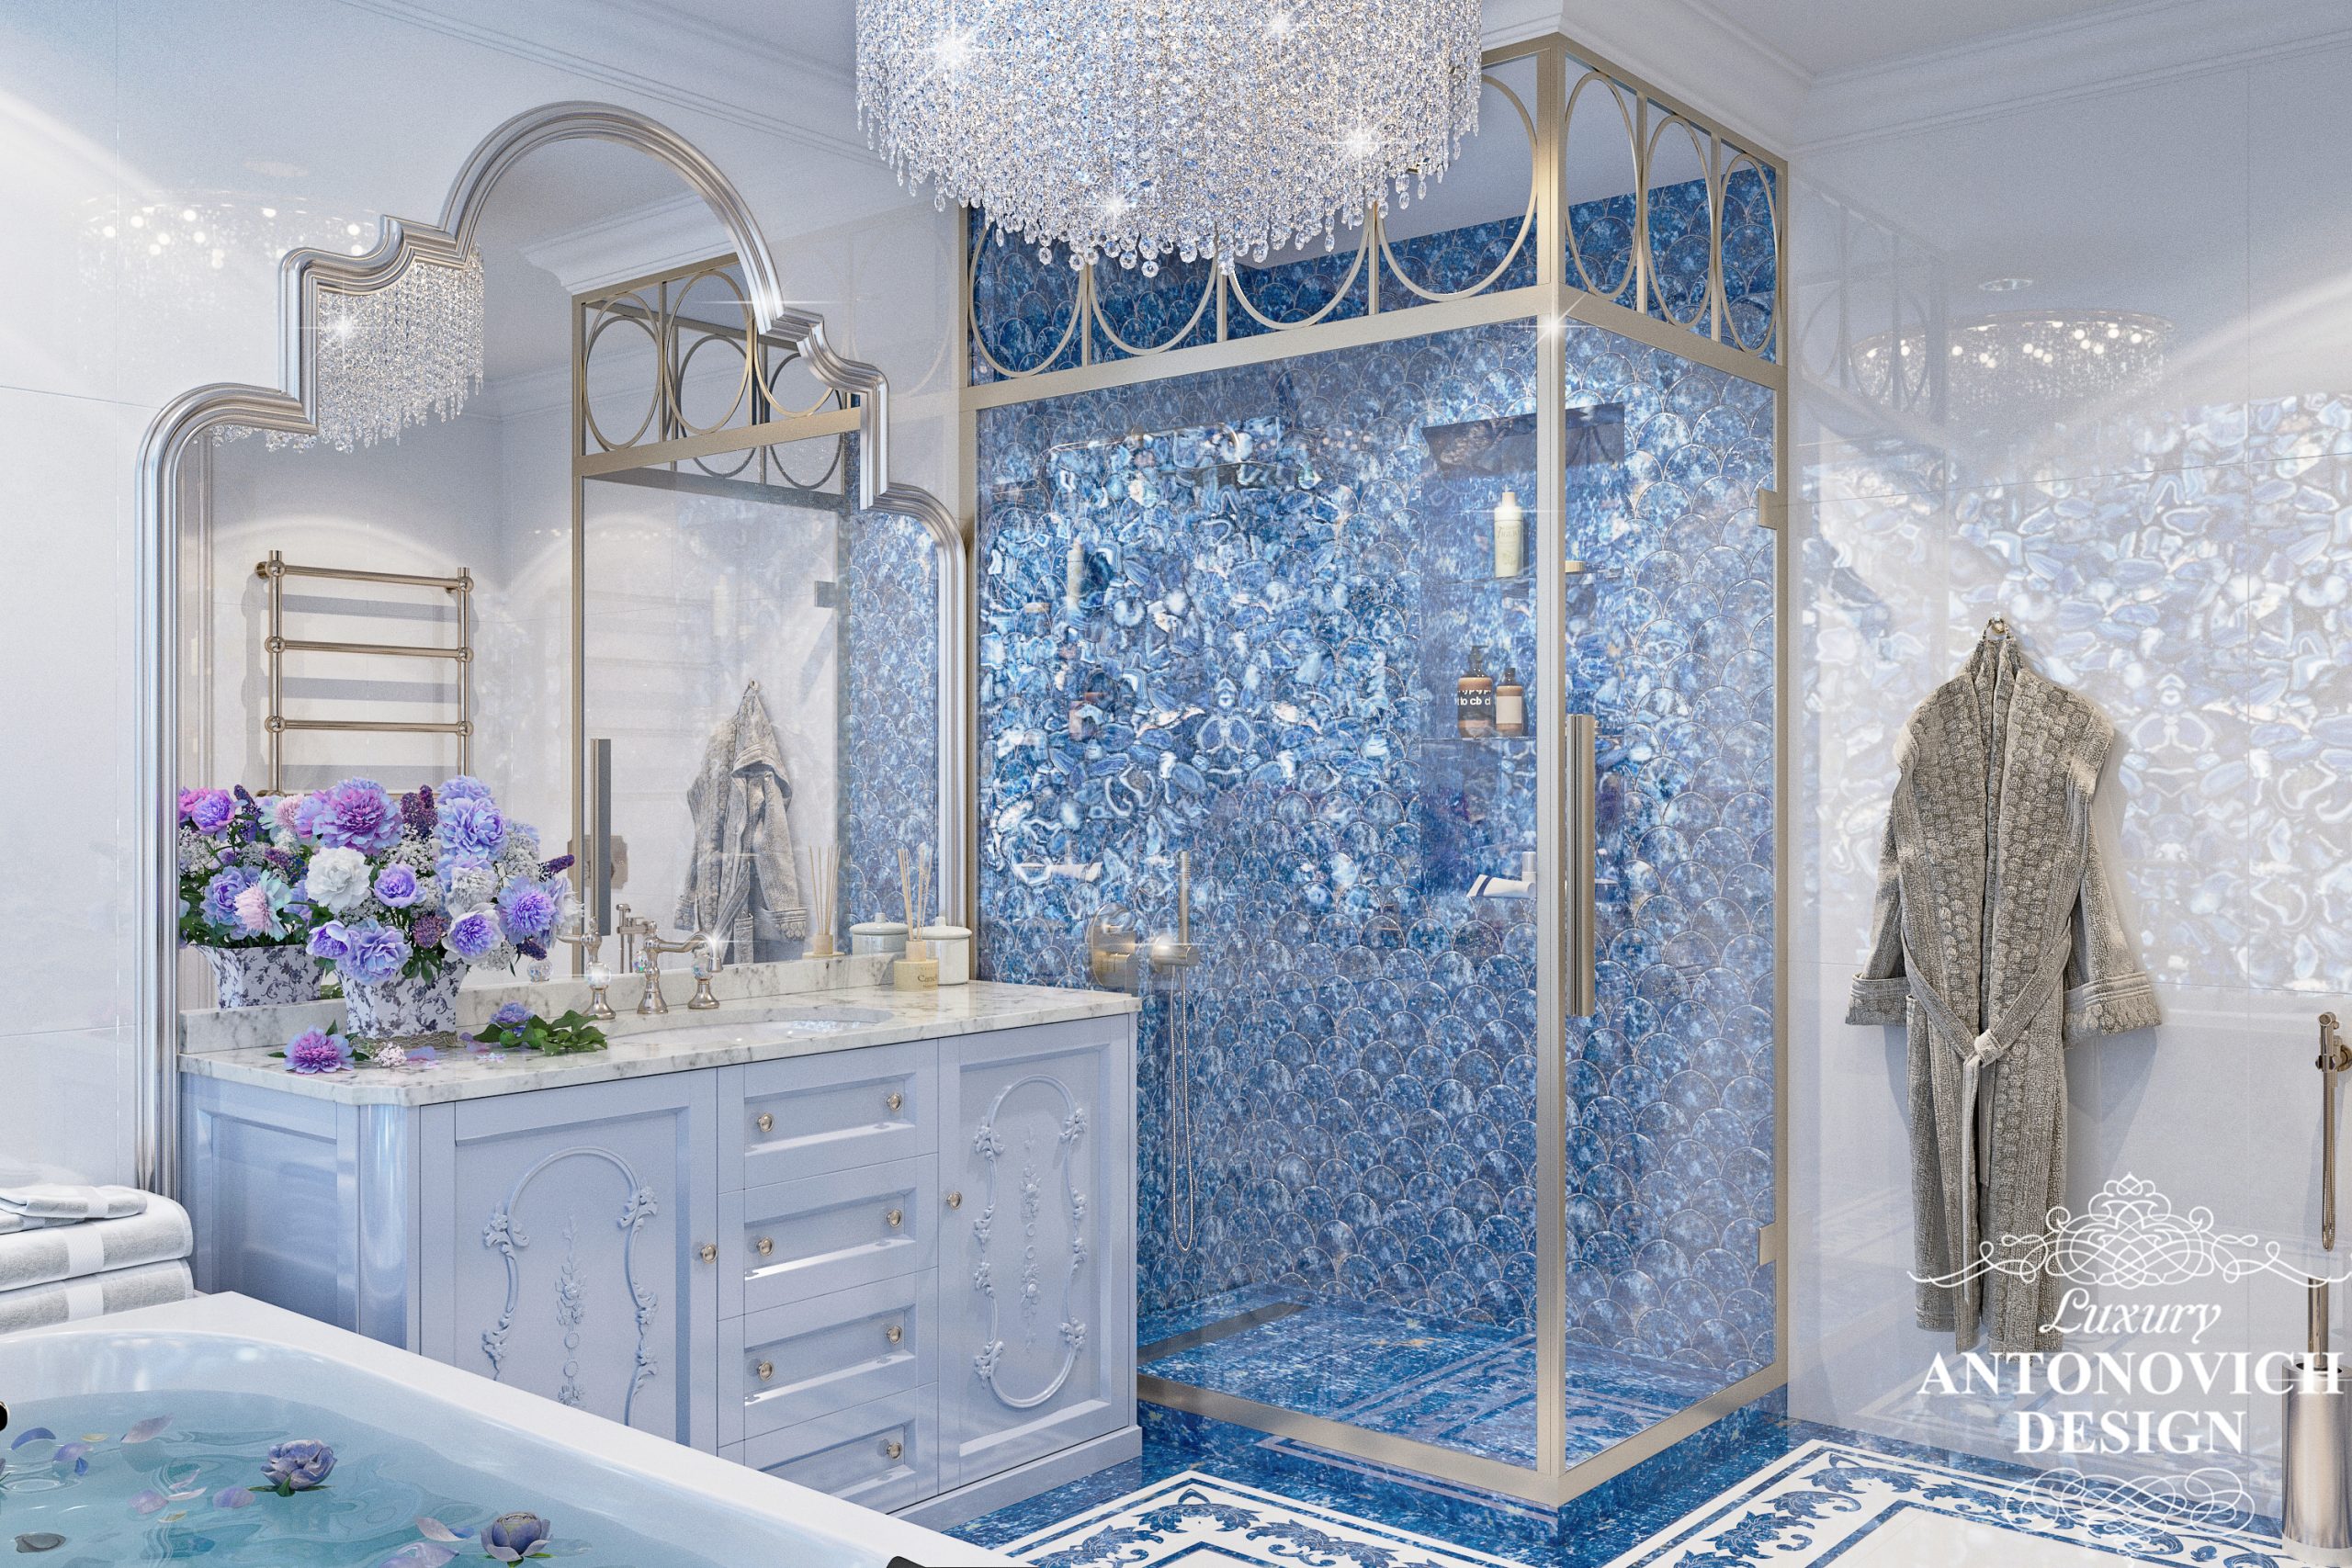 Дизайн розкішної ванної кімнати з обробкою з натуральних матеріалів і приголомшливим освітленням